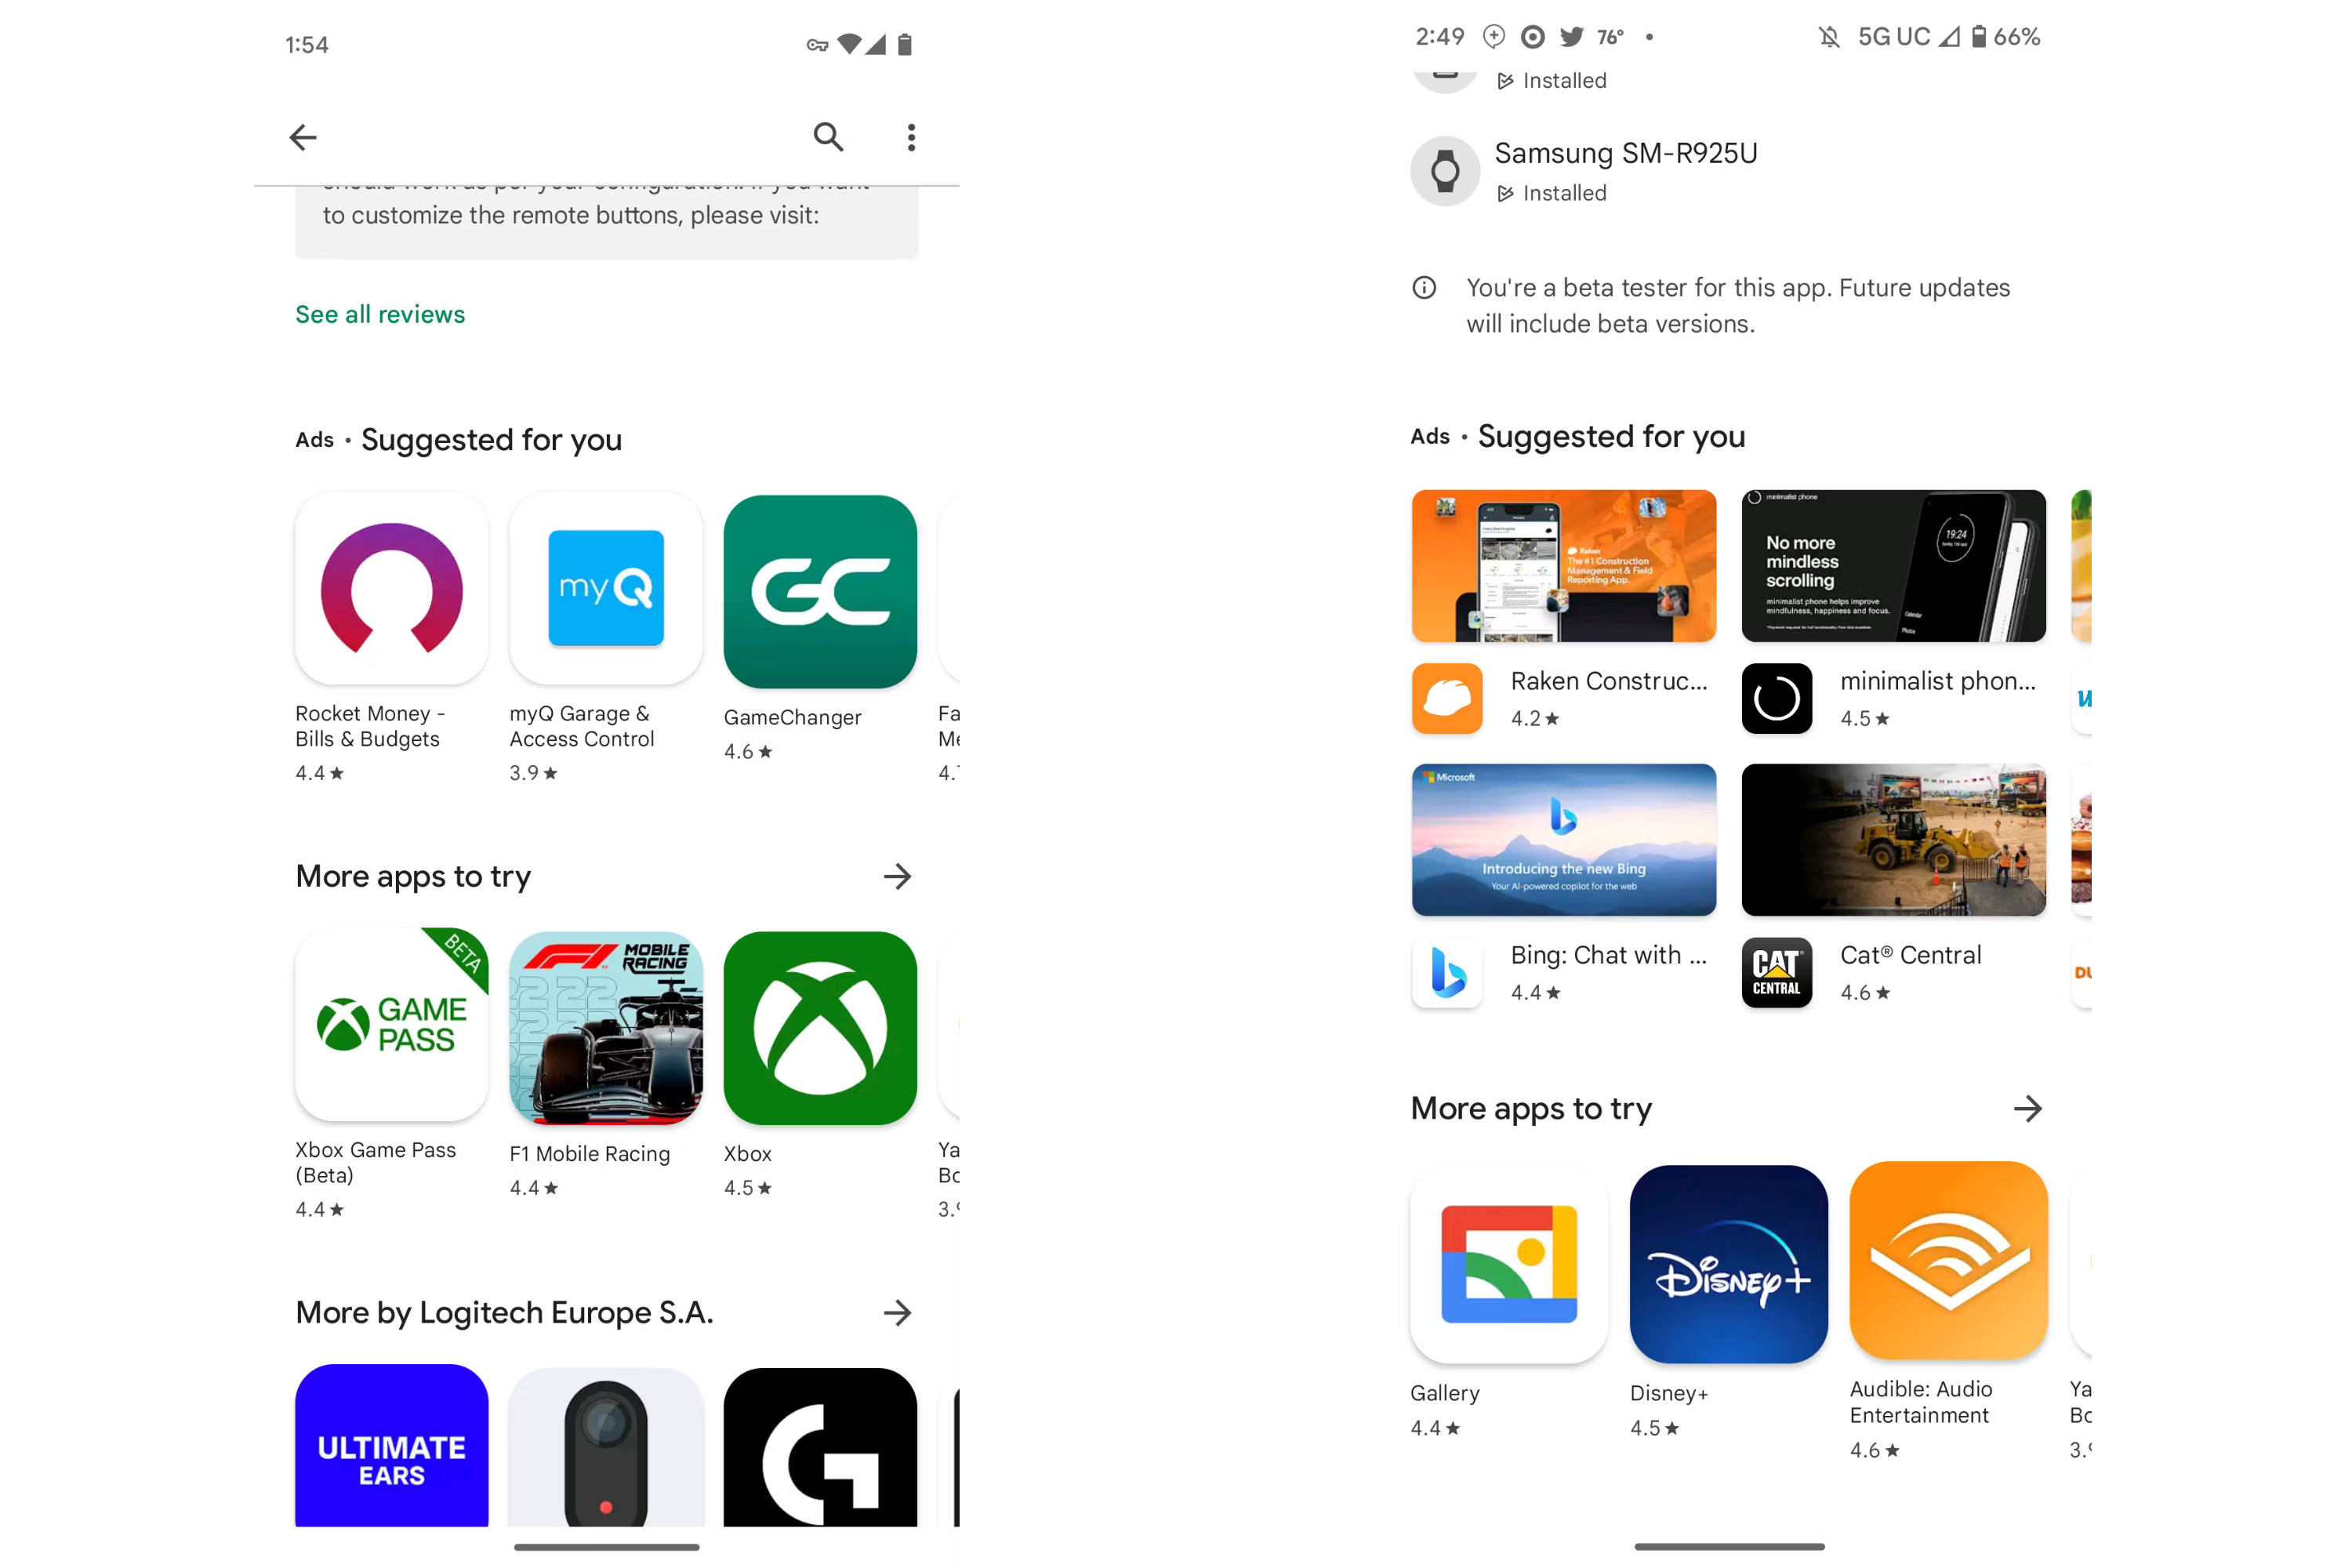 Los anuncios de Google Play Store se actualizan junto con nuevos anuncios en la actualización